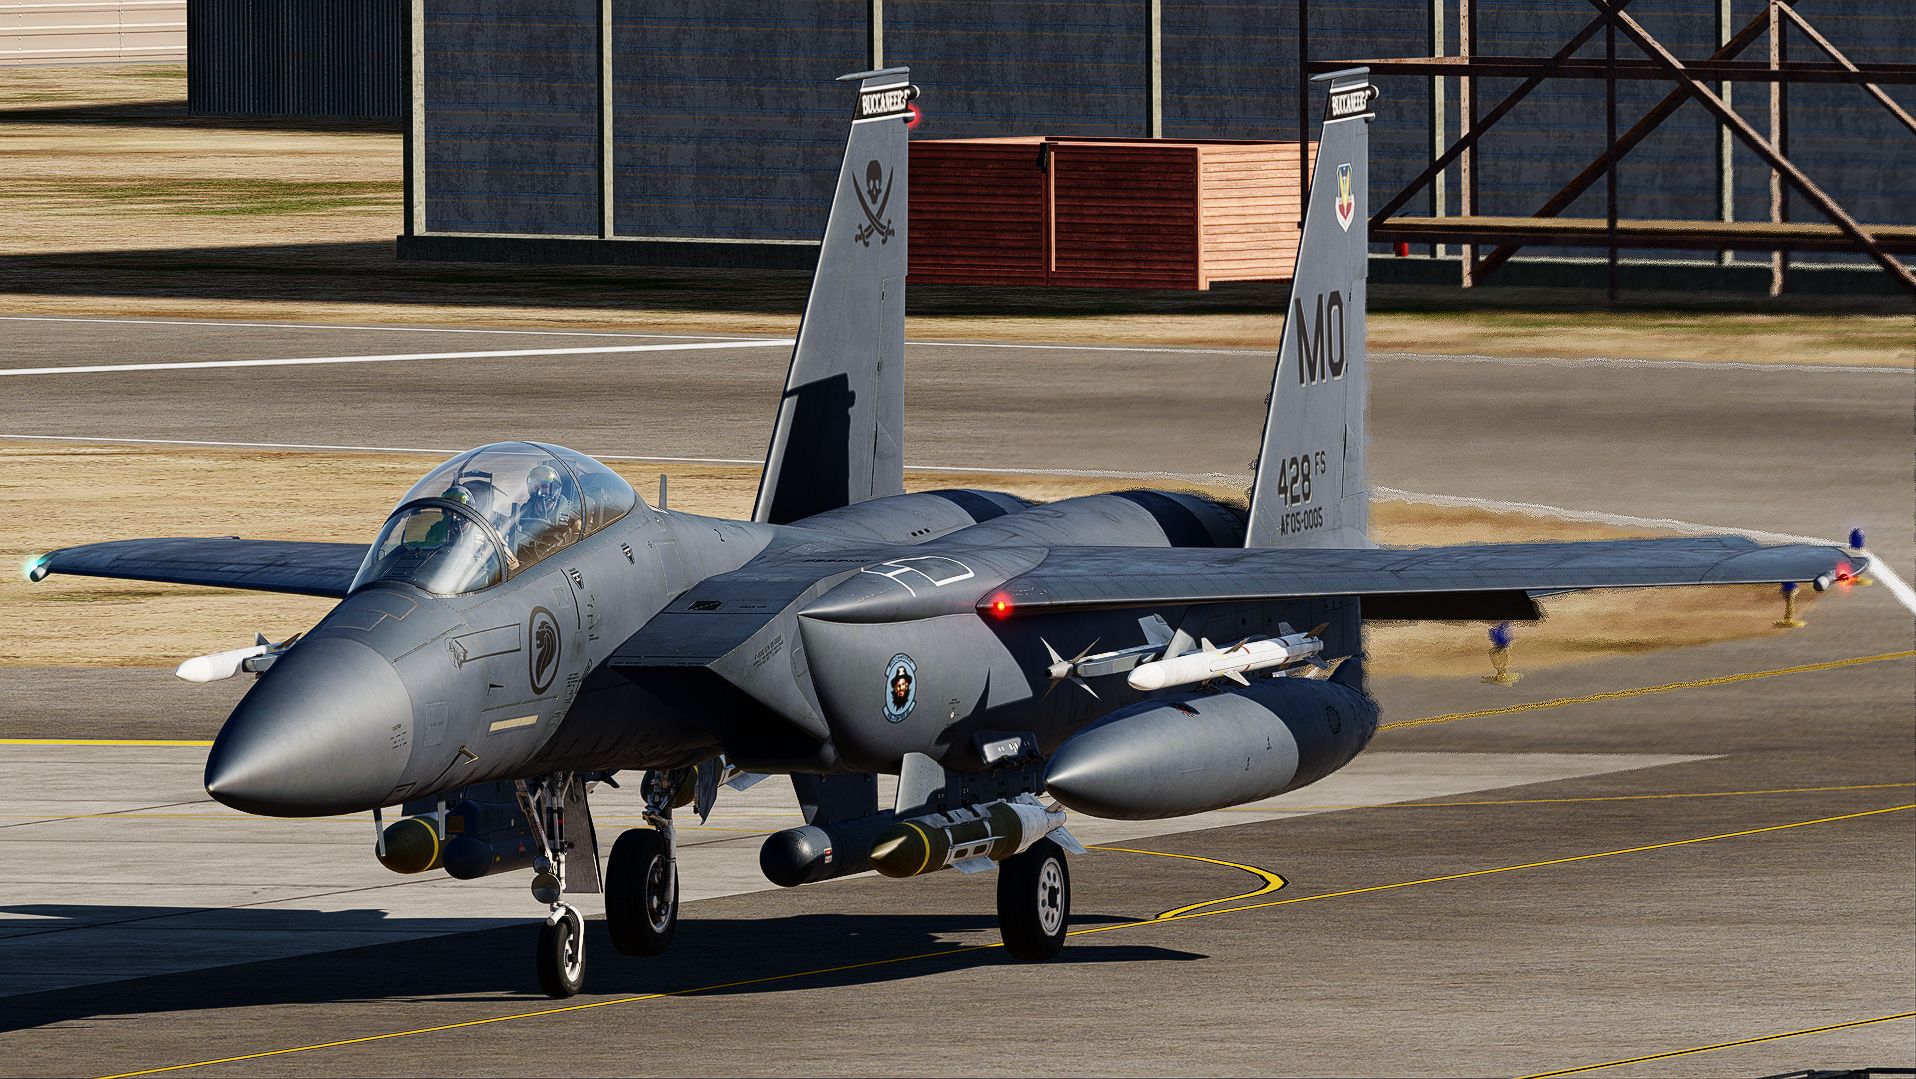 F-15E Strike eagle MO 05-0005 "FLAGSHIP"